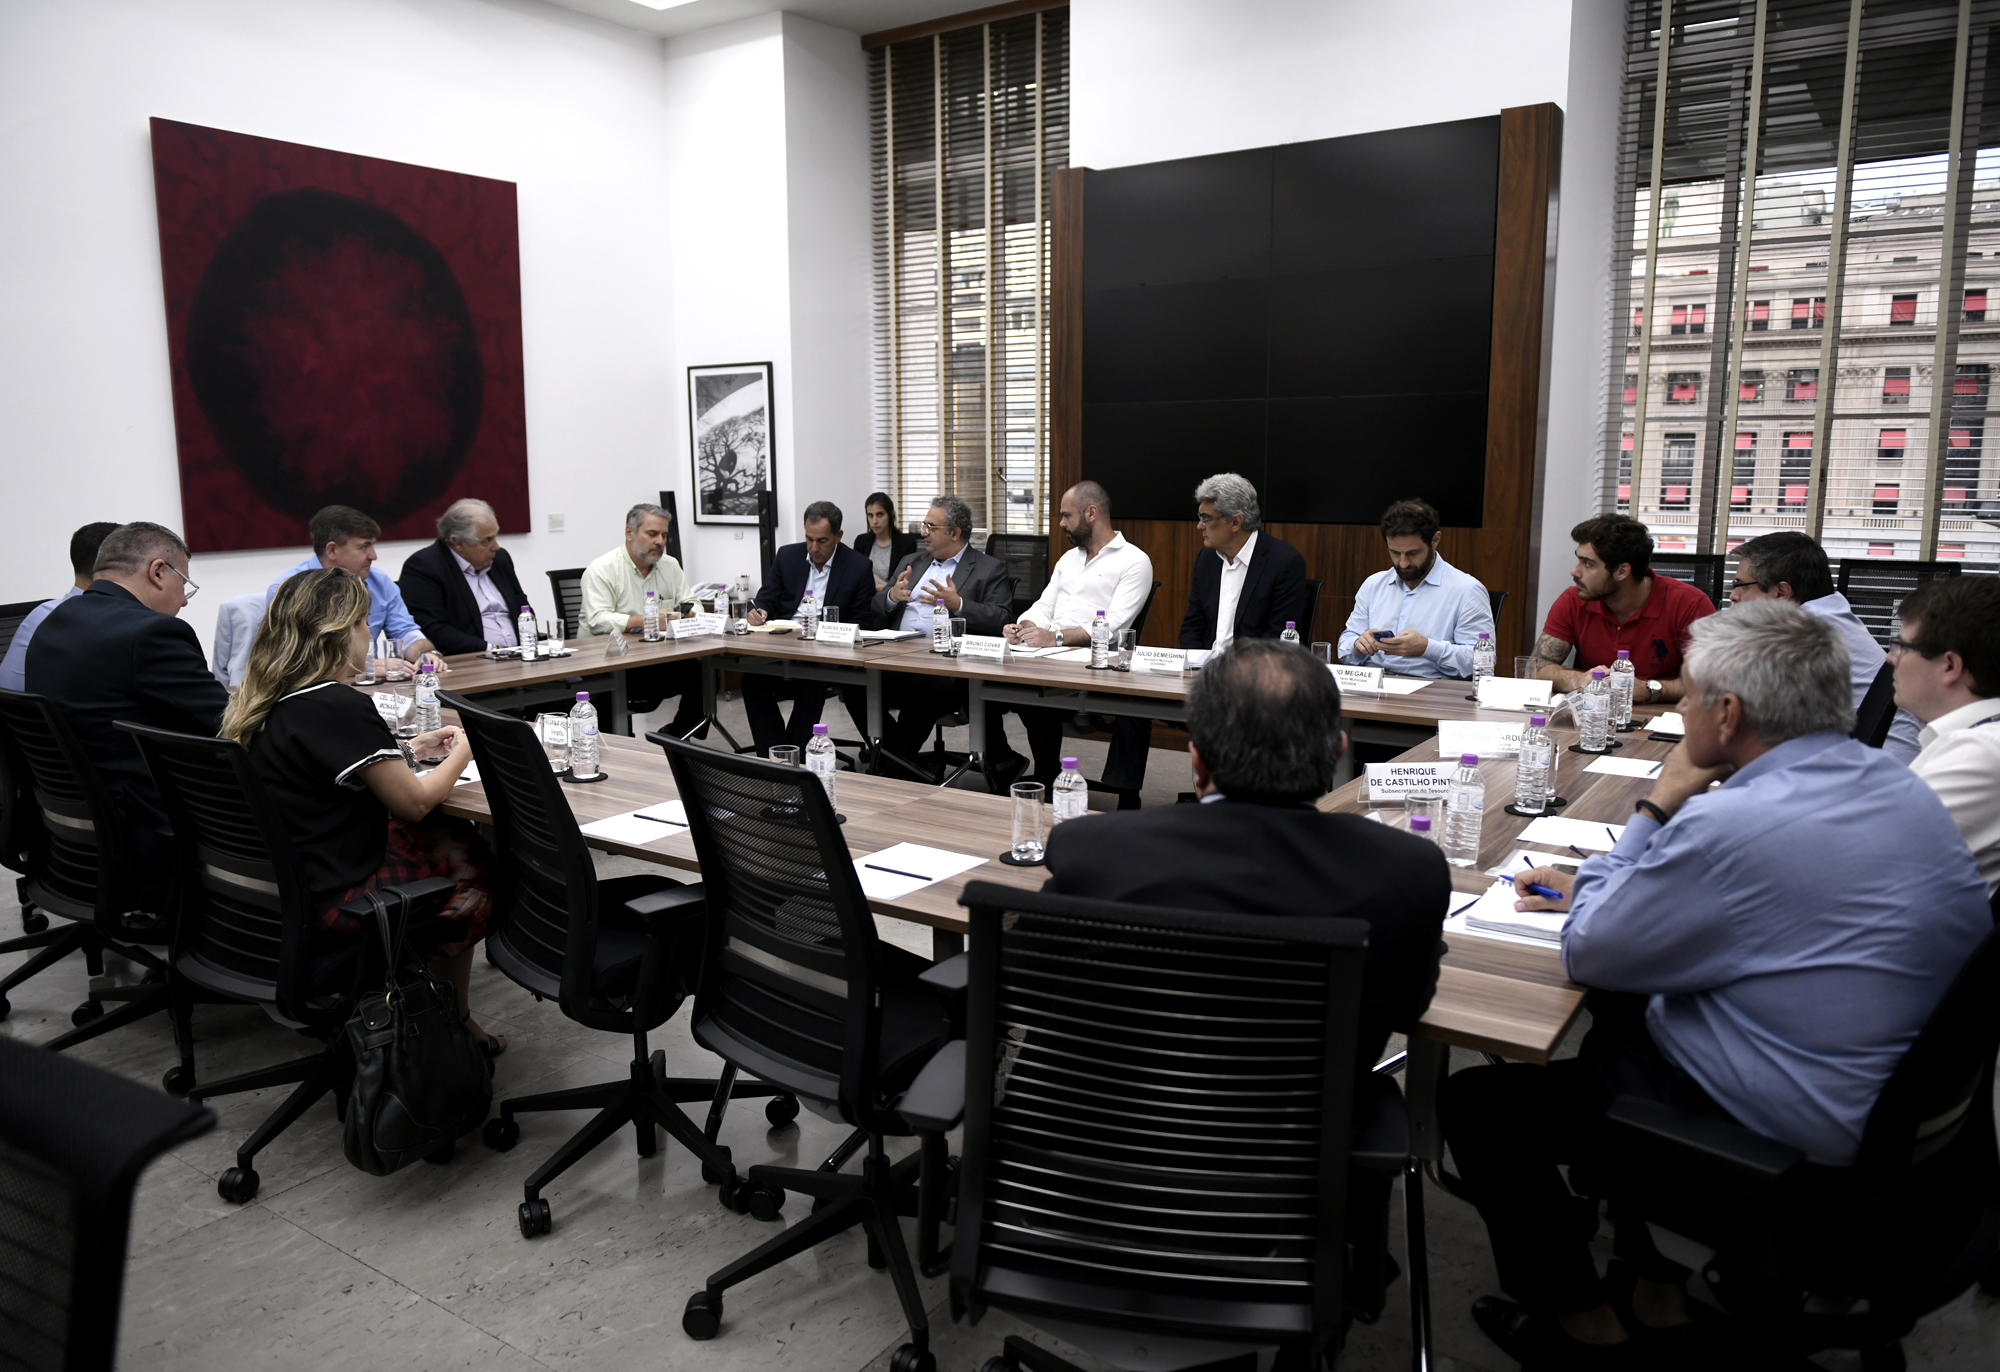 Foto da sala de reunião com os integrantes do Comitê de Crise do Viaduto Marginal Pinheiros.